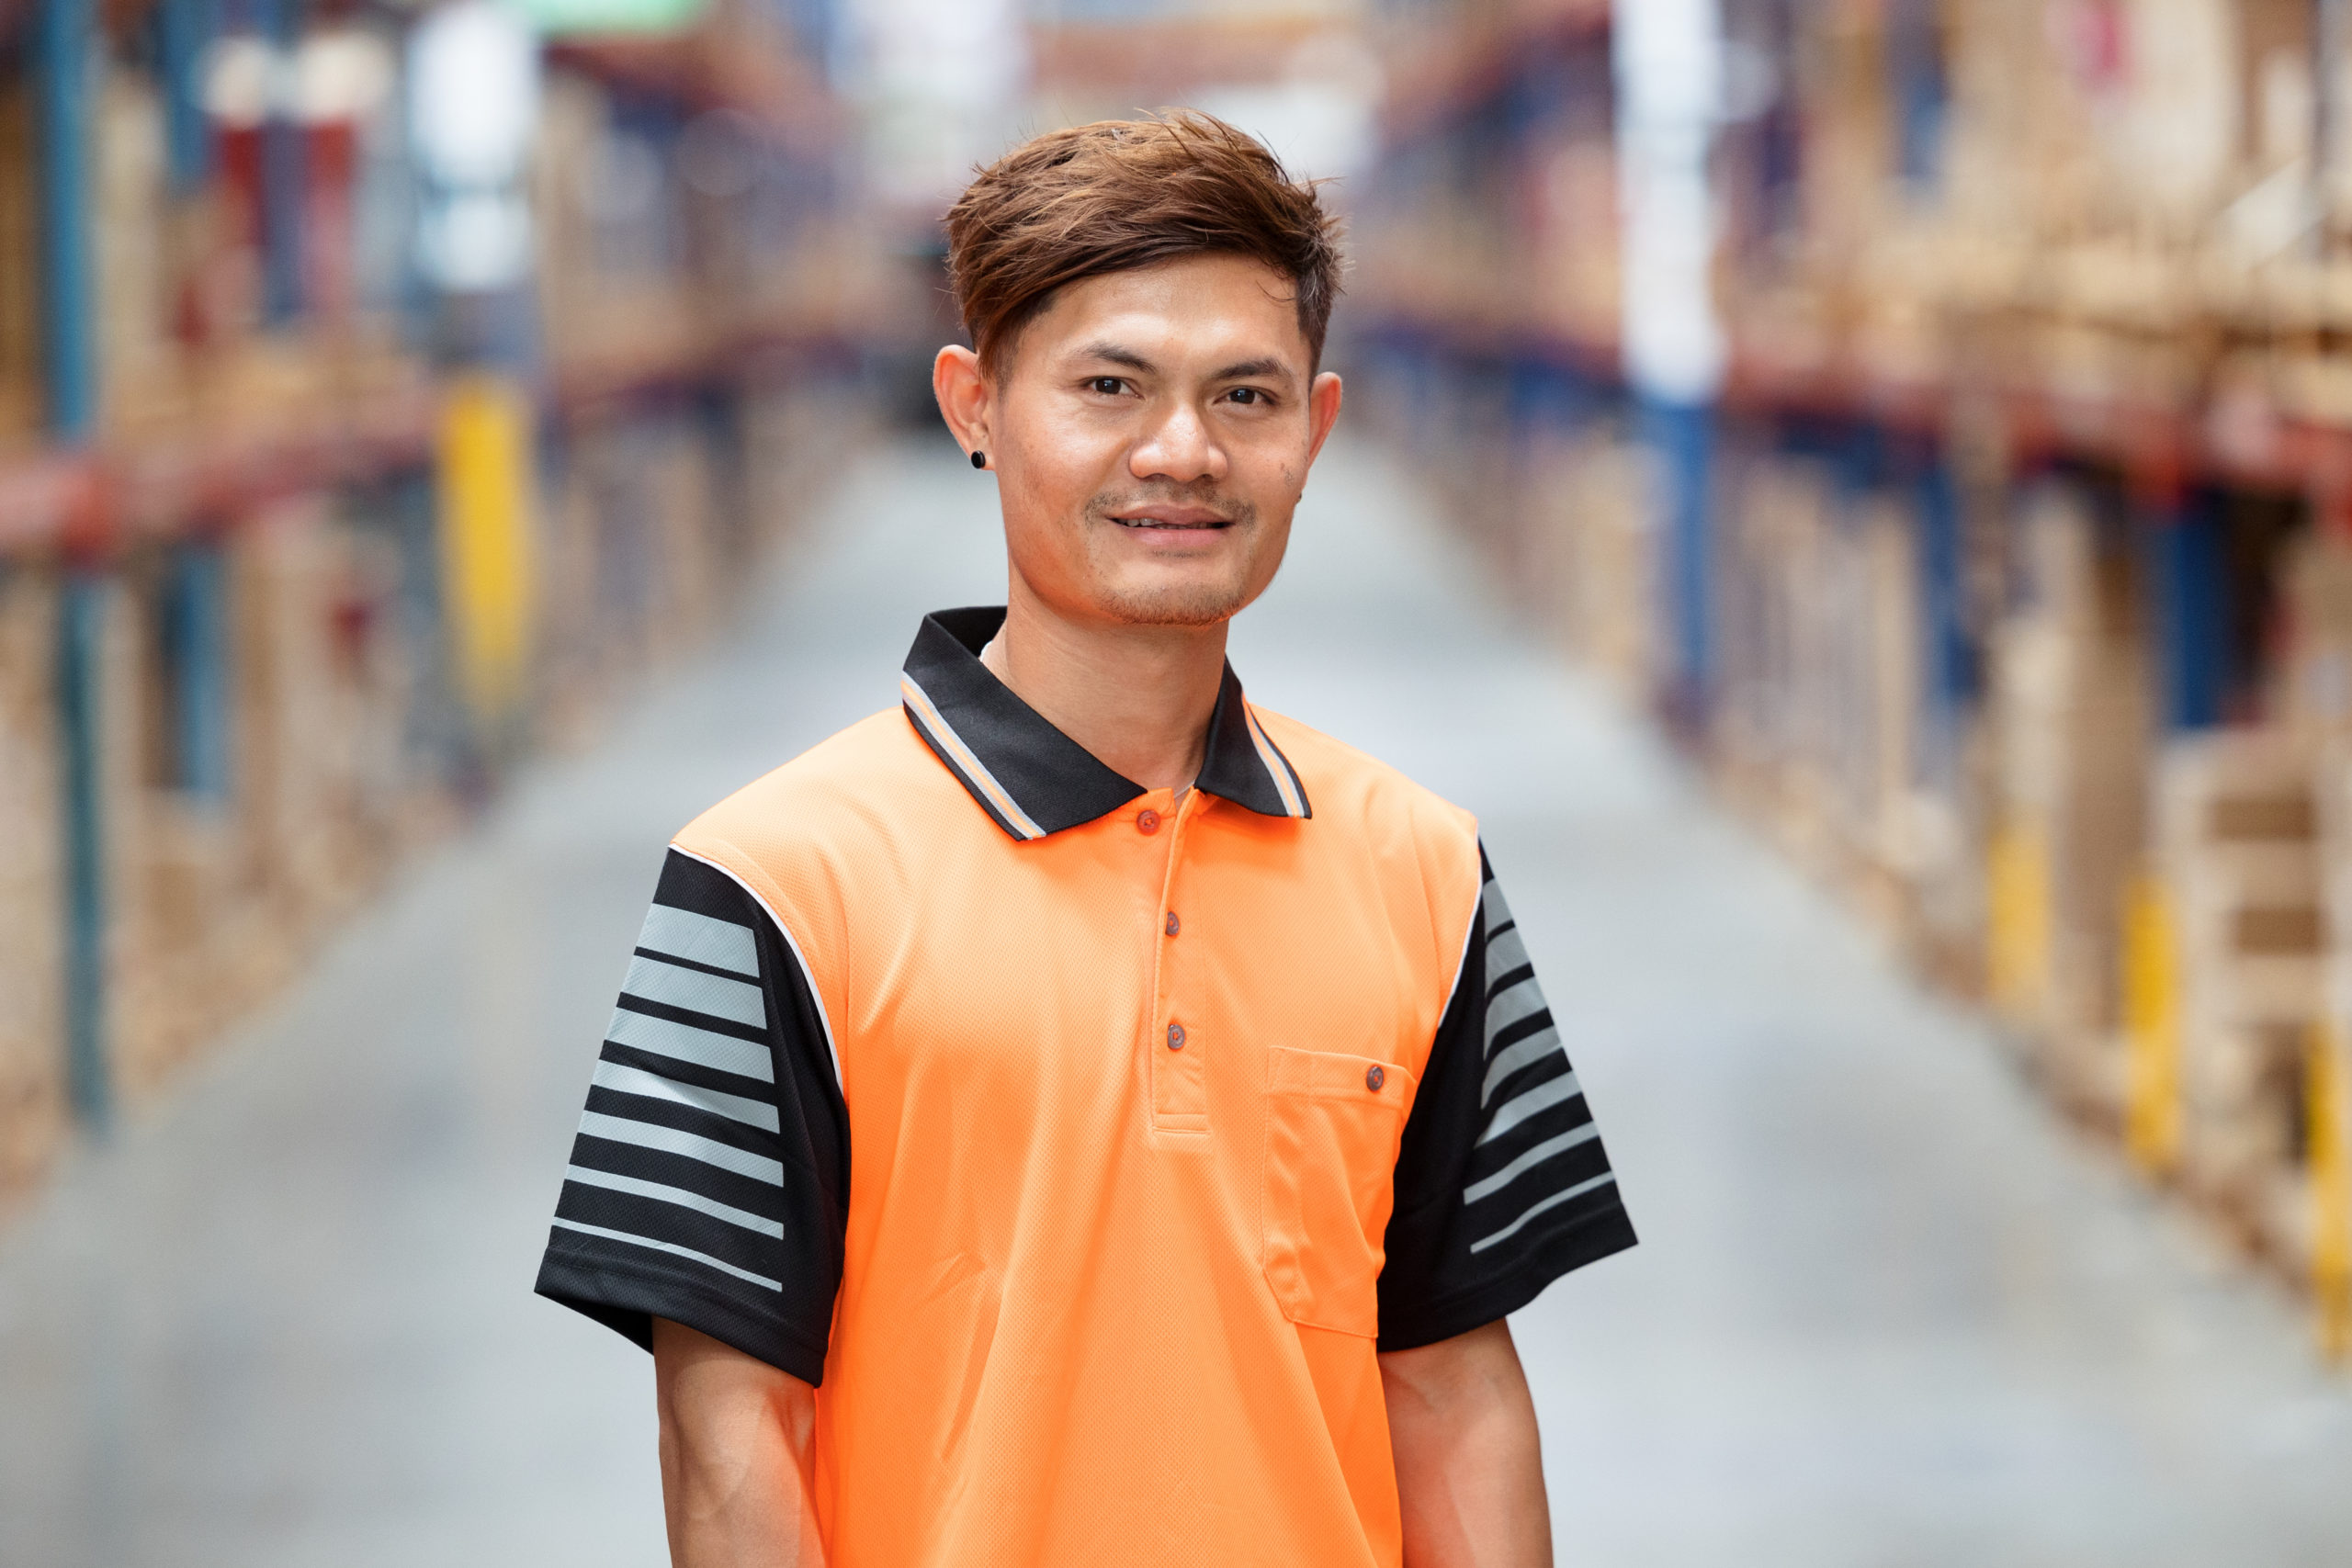 Milsons warehouse supervisor_Kah Paw Htoo